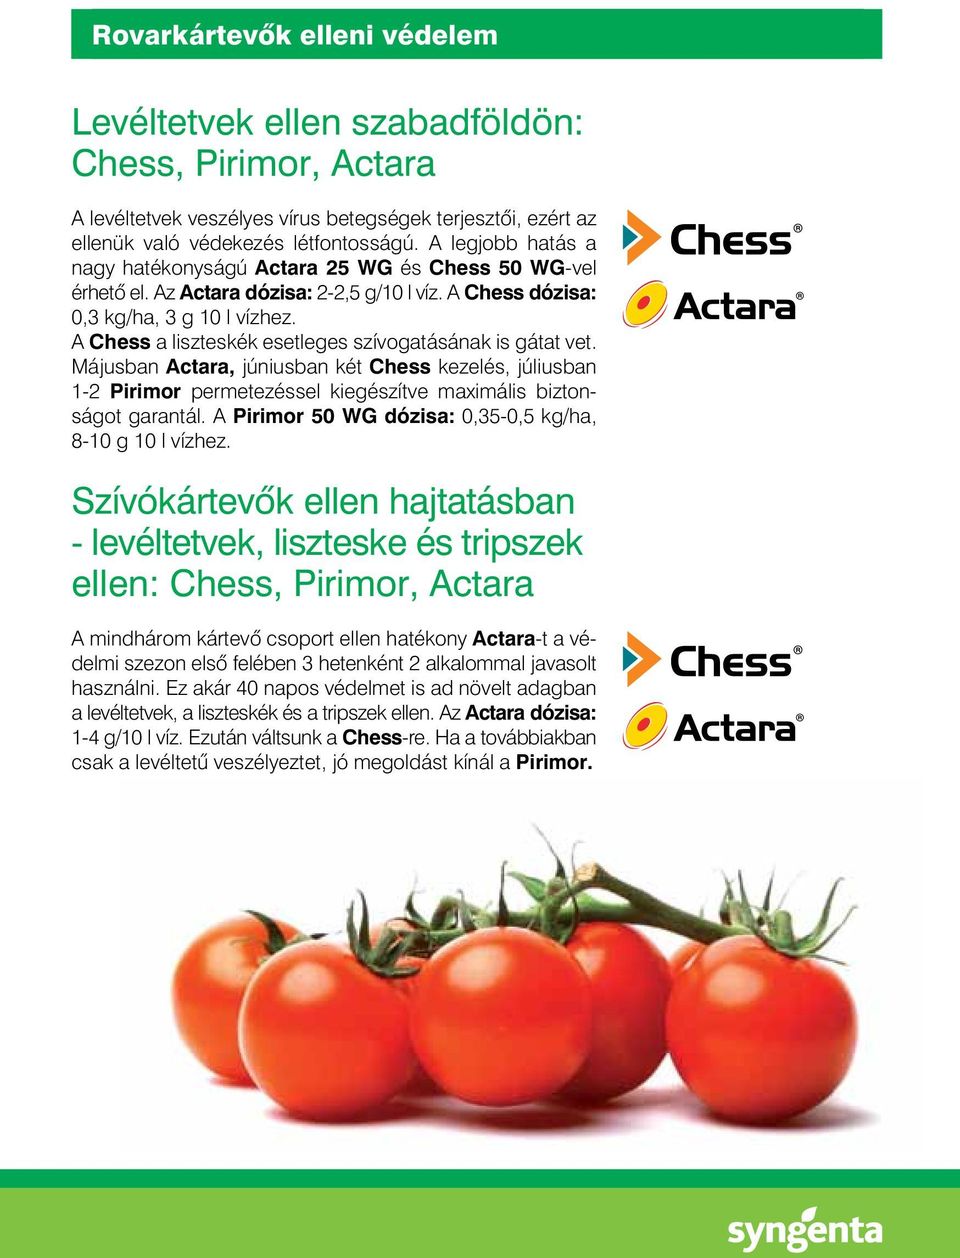 A Chess a liszteskék esetleges szívogatásának is gátat vet. Májusban Actara, júniusban két Chess kezelés, júliusban 1-2 Pirimor permetezéssel kiegészítve maximális biztonságot garantál.